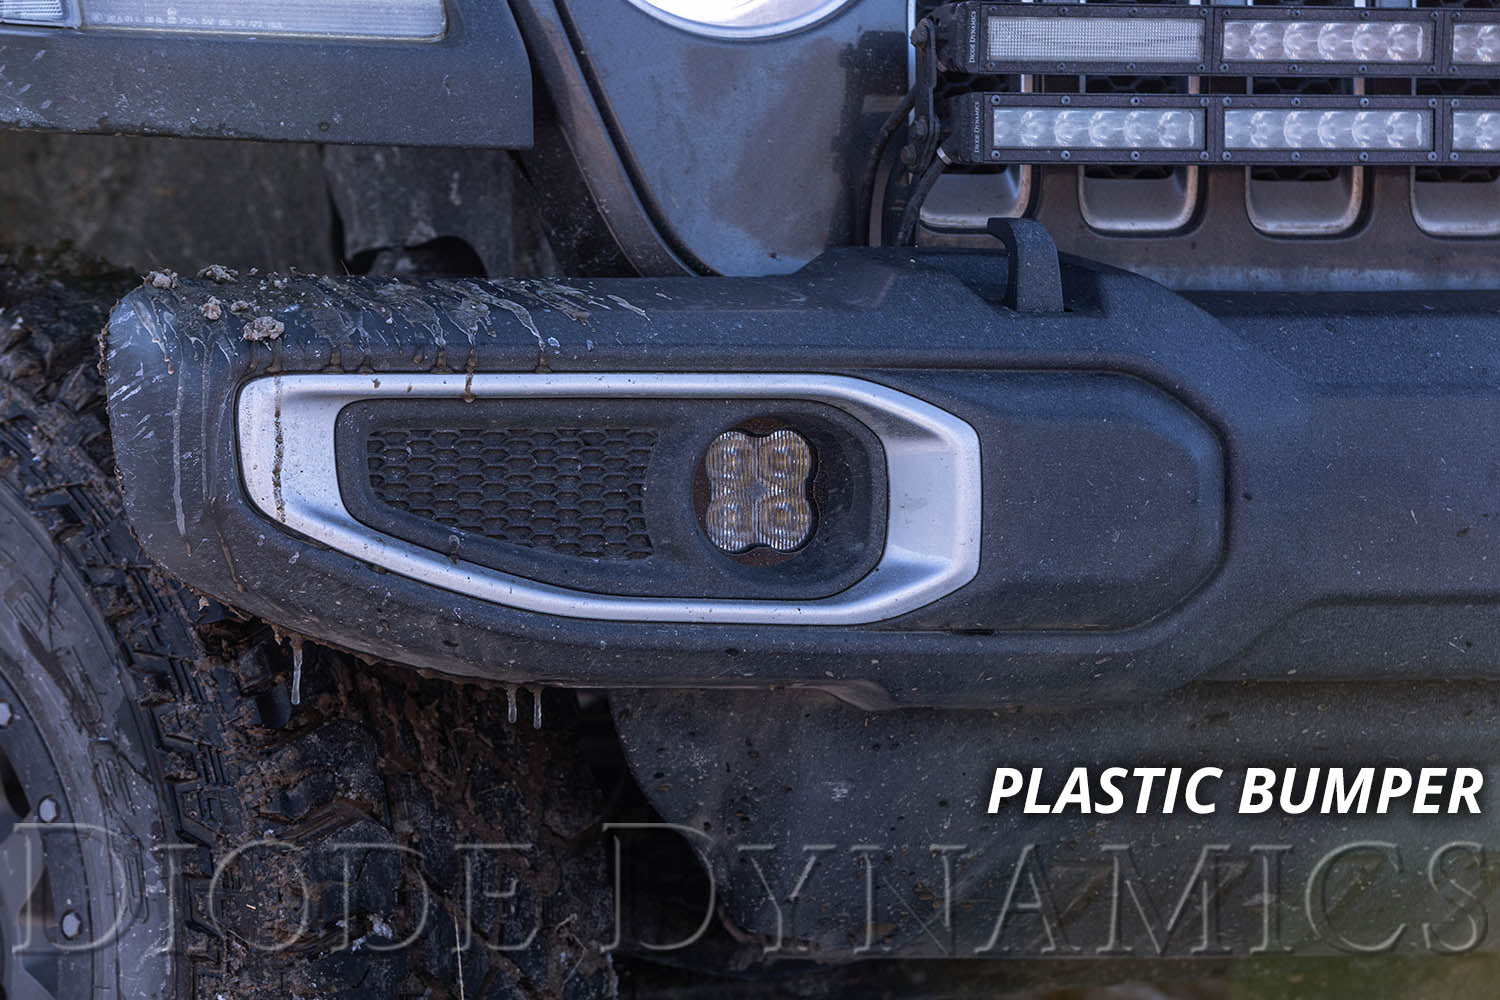 SS3 LED Fog Light Kit for 2020-2021 Jeep Gladiator White SAE Fog Sport w/ Backlight Type MR Bracket Kit Diode Dynamics